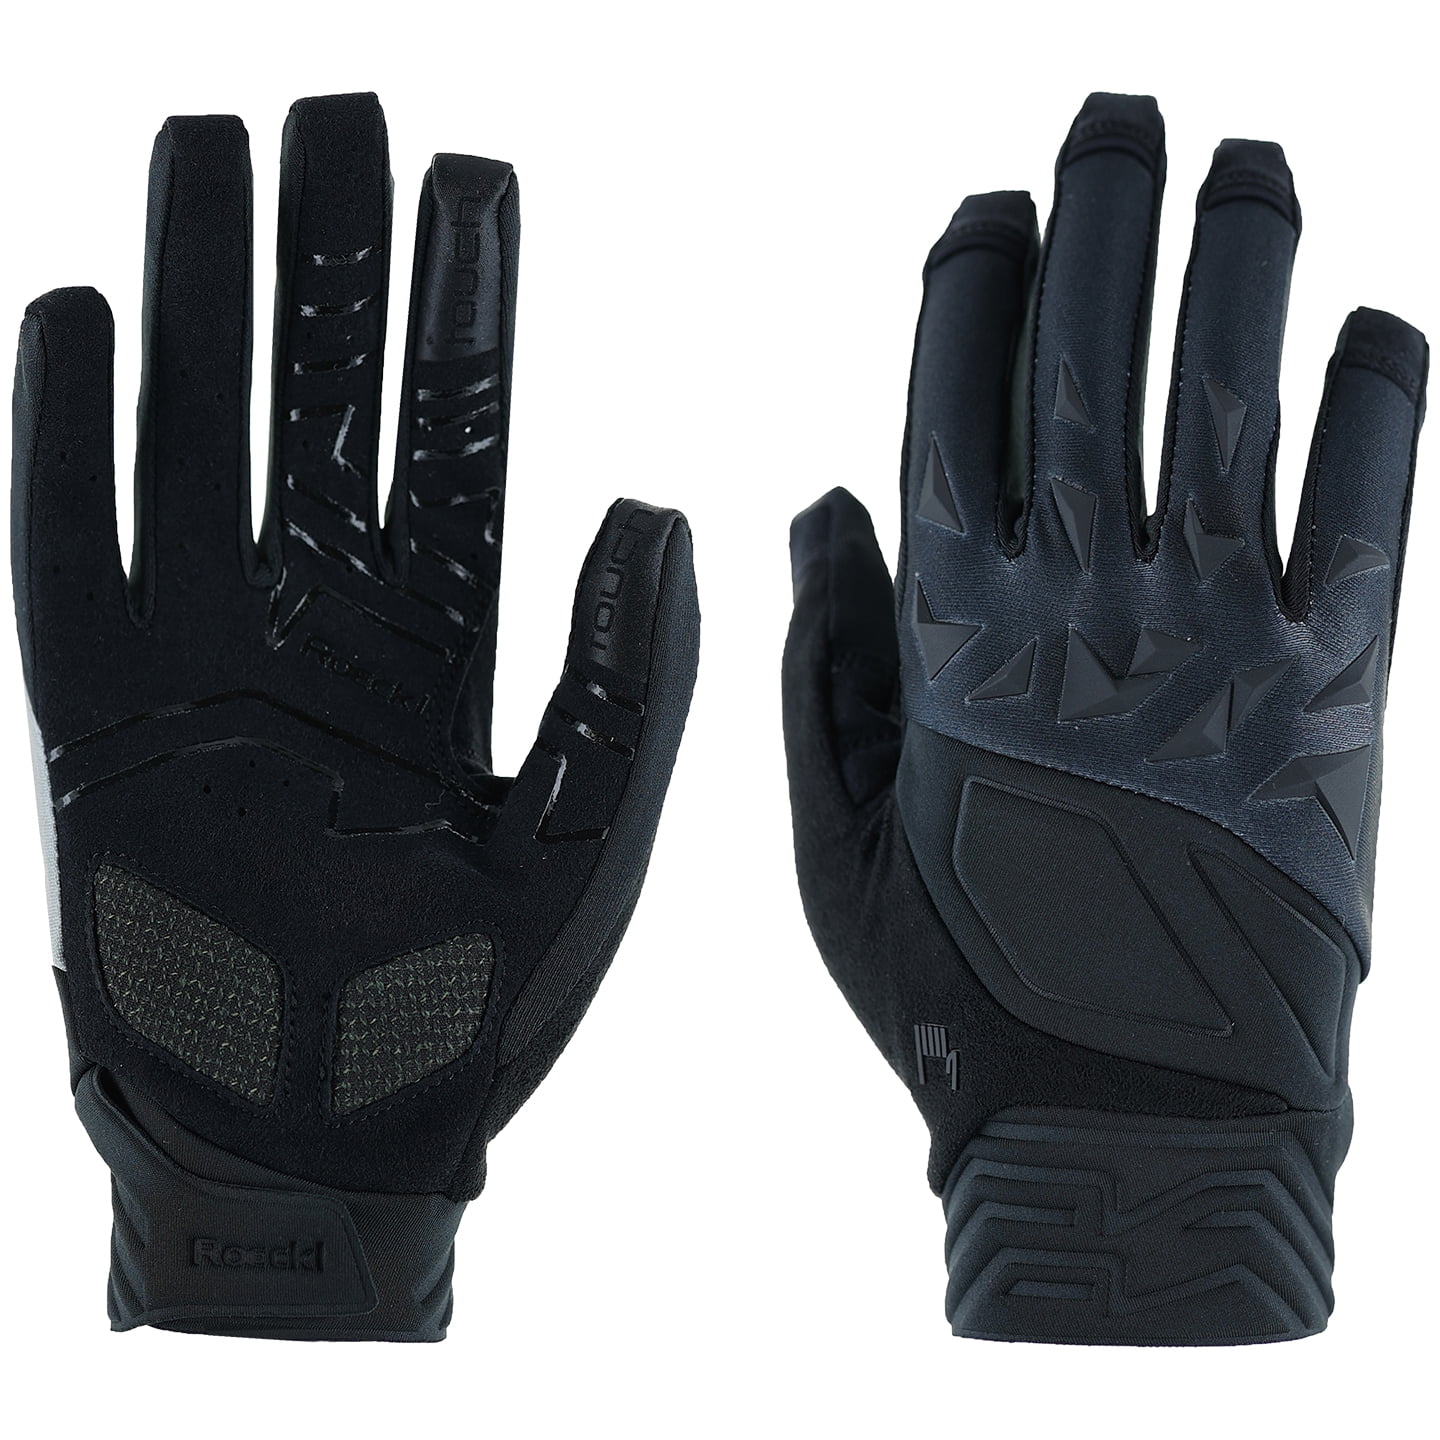 ROECKL Montalbo Full Finger Gloves Cycling Gloves, for men, size 9, Bike gloves, Bike wear